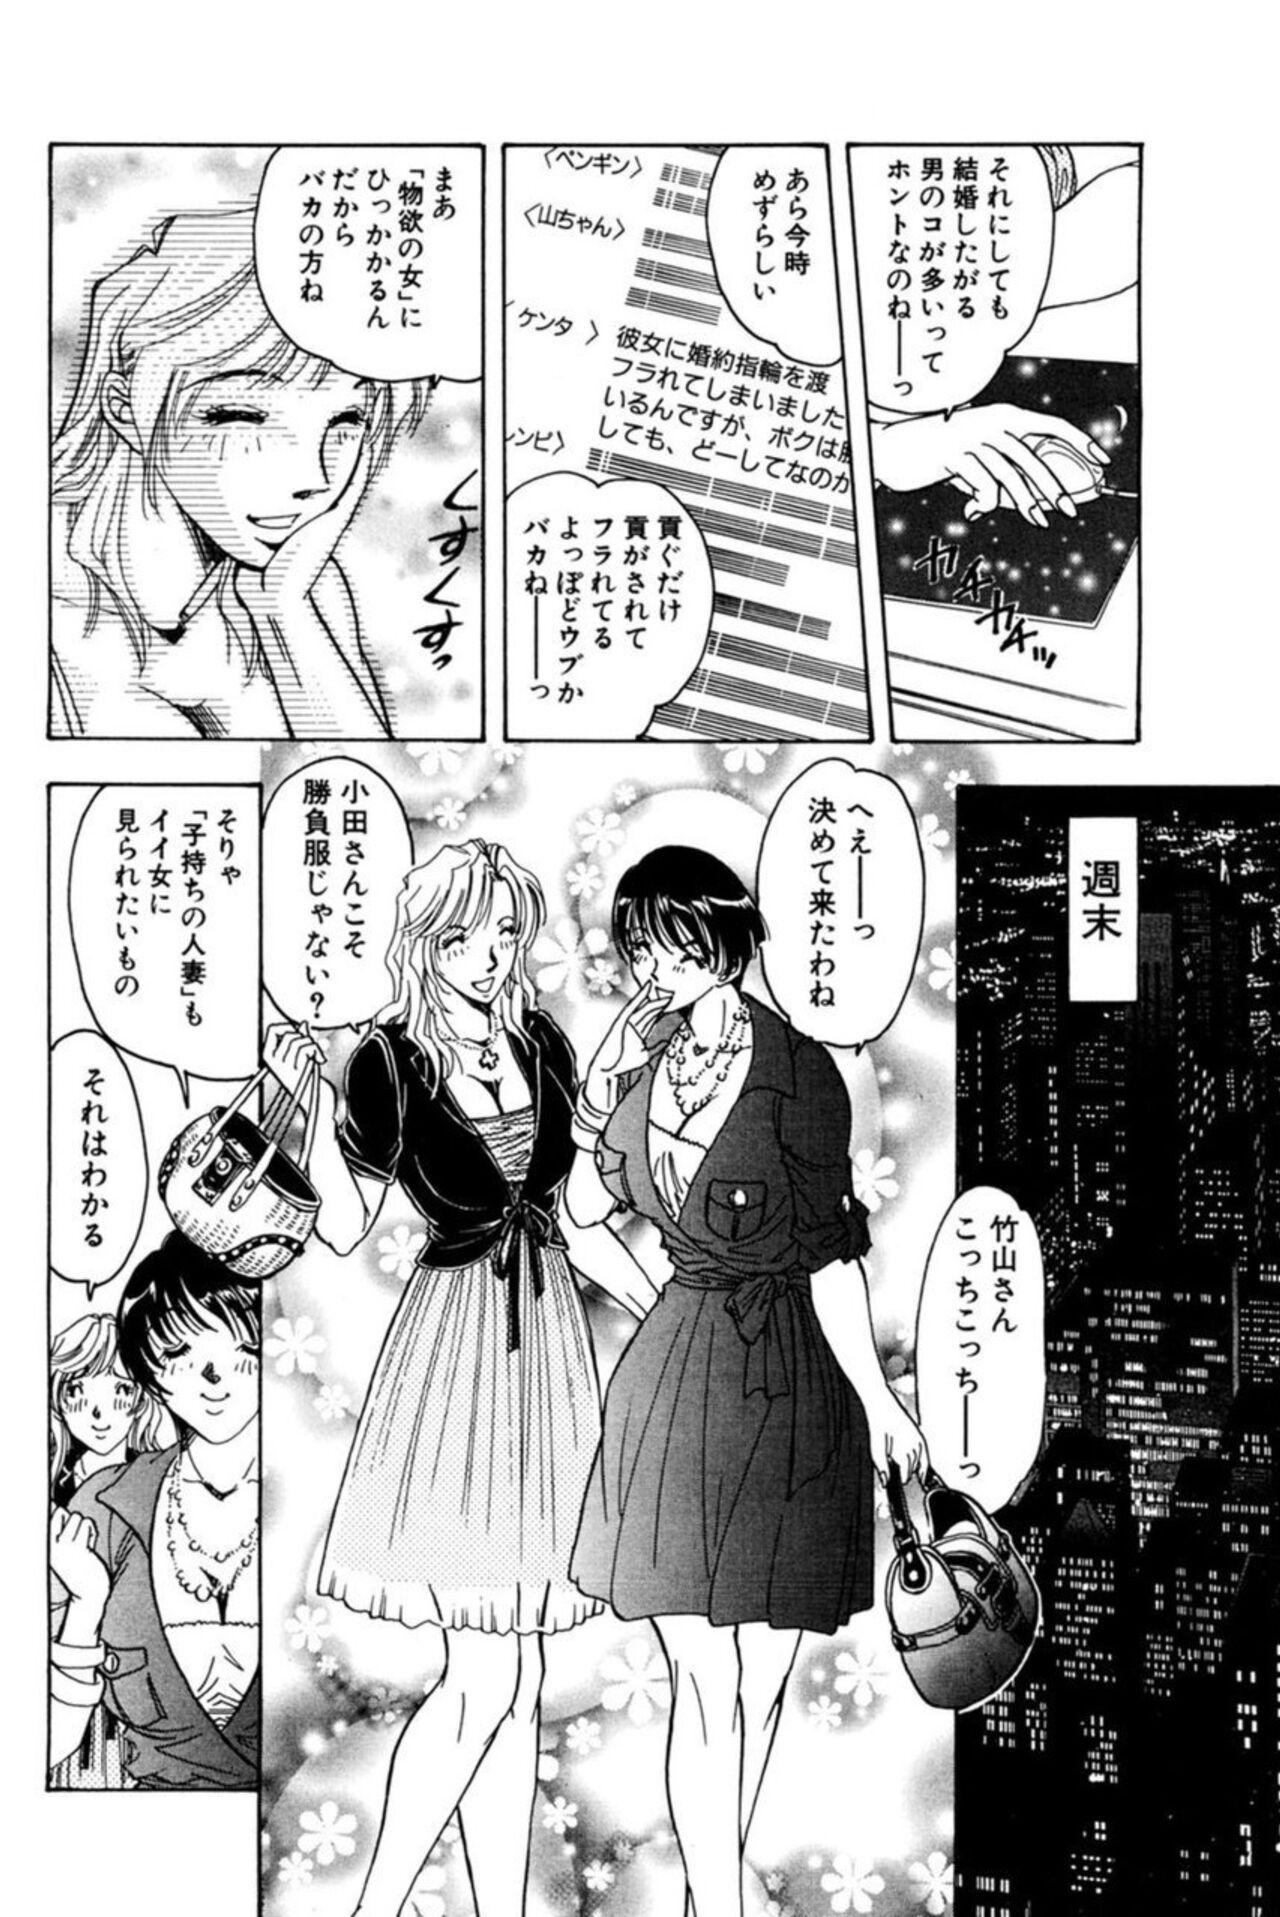 Teenager Nu meru Hitodzuma wa Aratana Shigeki o Sagashite Motomeru 1 Gaygroup - Page 12